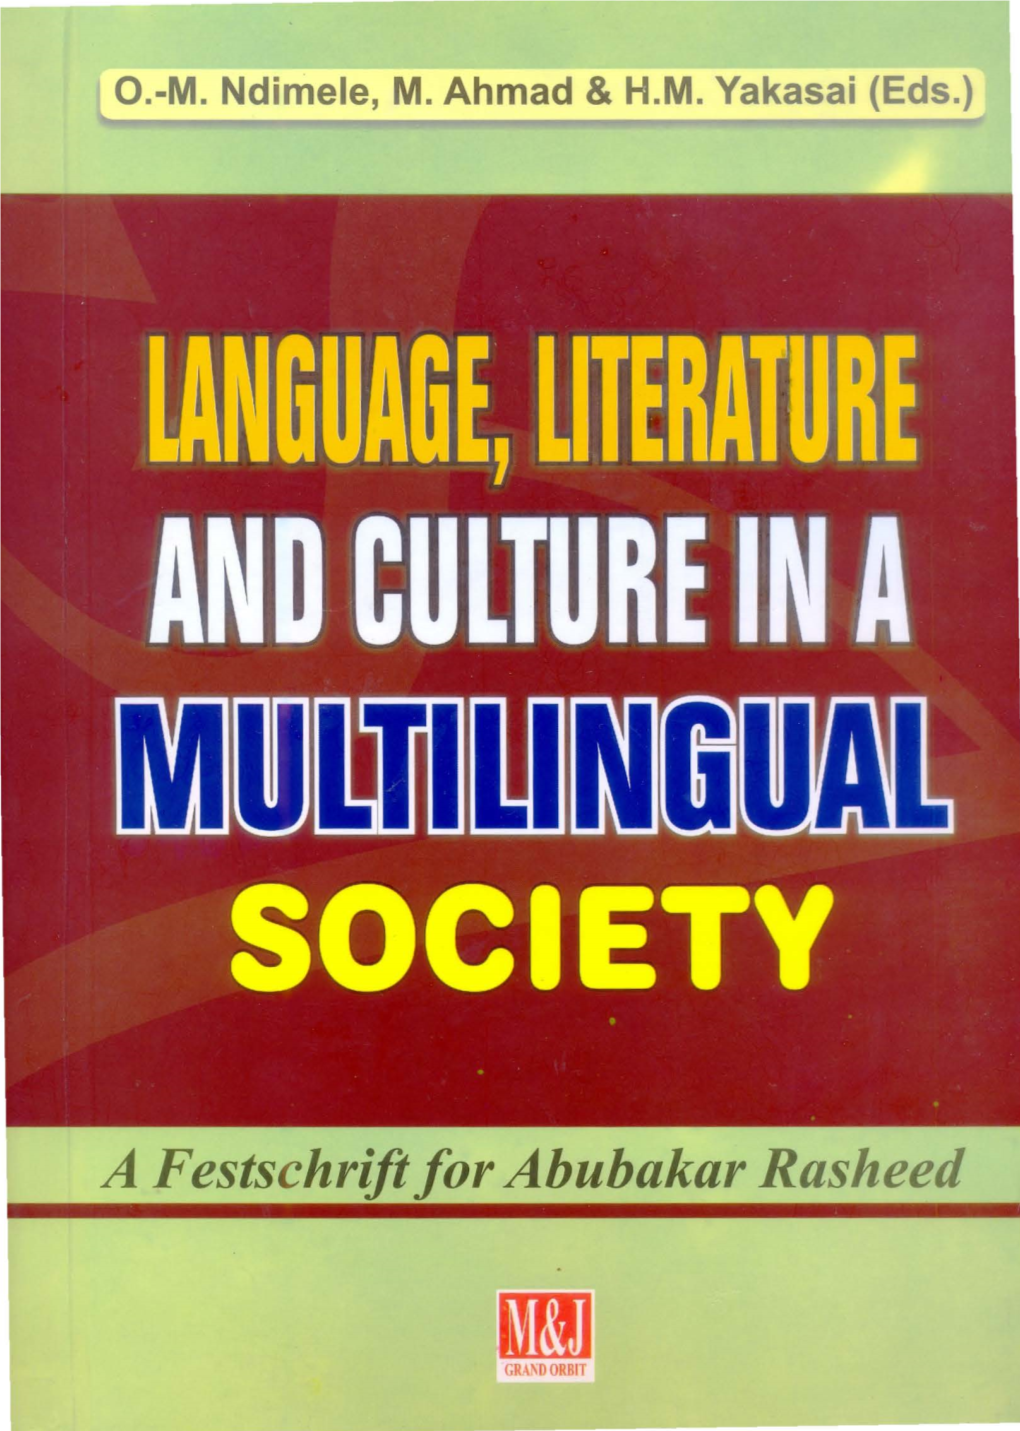 A Festschrift for Abubakar Rasheed